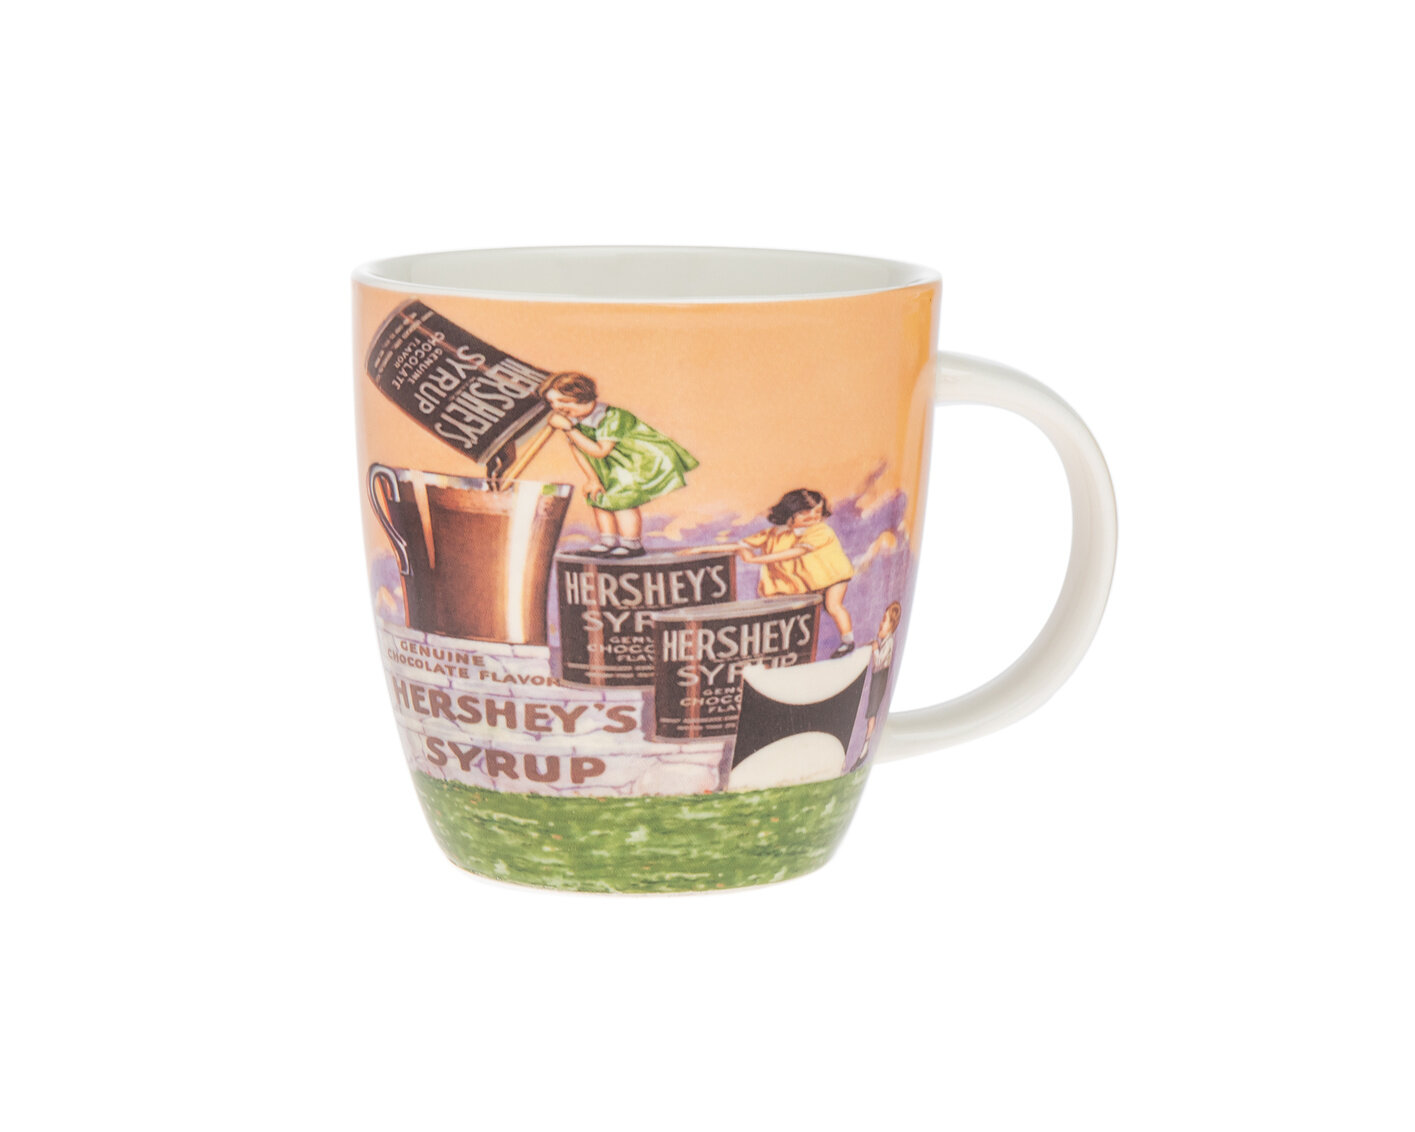 https://assets.wfcdn.com/im/01767378/compr-r85/1538/153884982/godinger-hersheys-vintage-syrup-17oz-coffee-mug.jpg